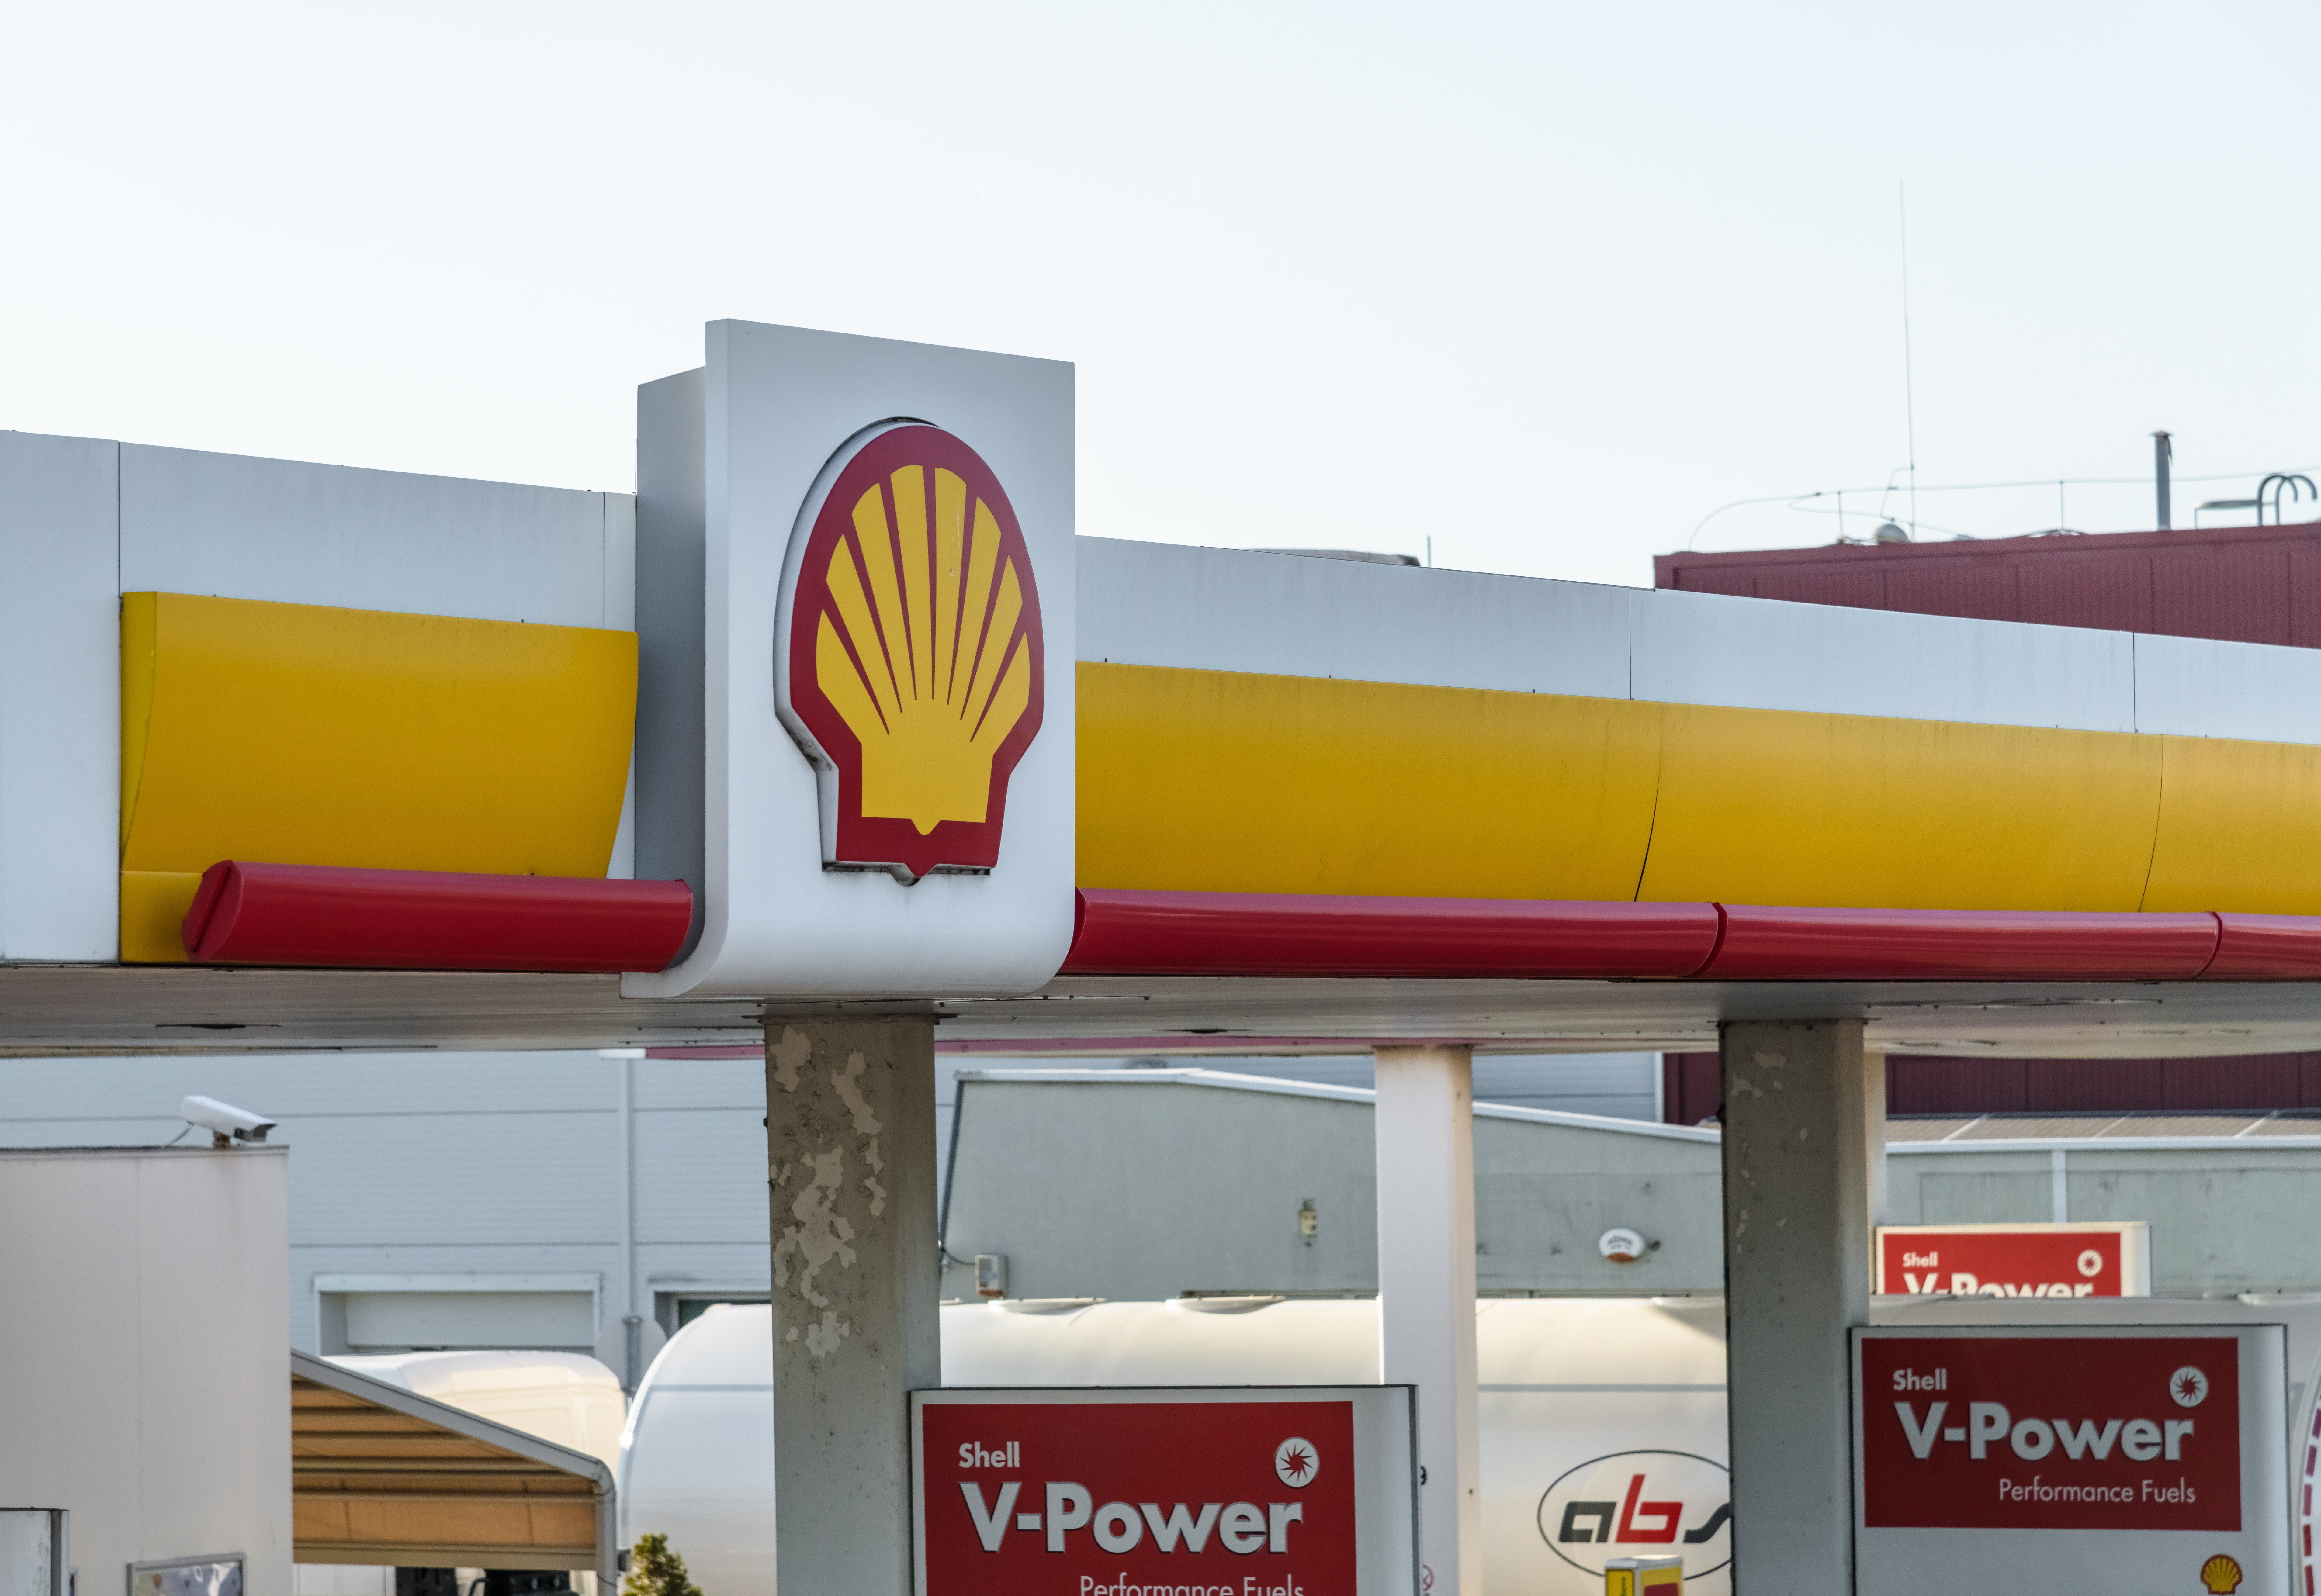 Vége! A Gazprom leállítja a gázszállítást a Shell számára